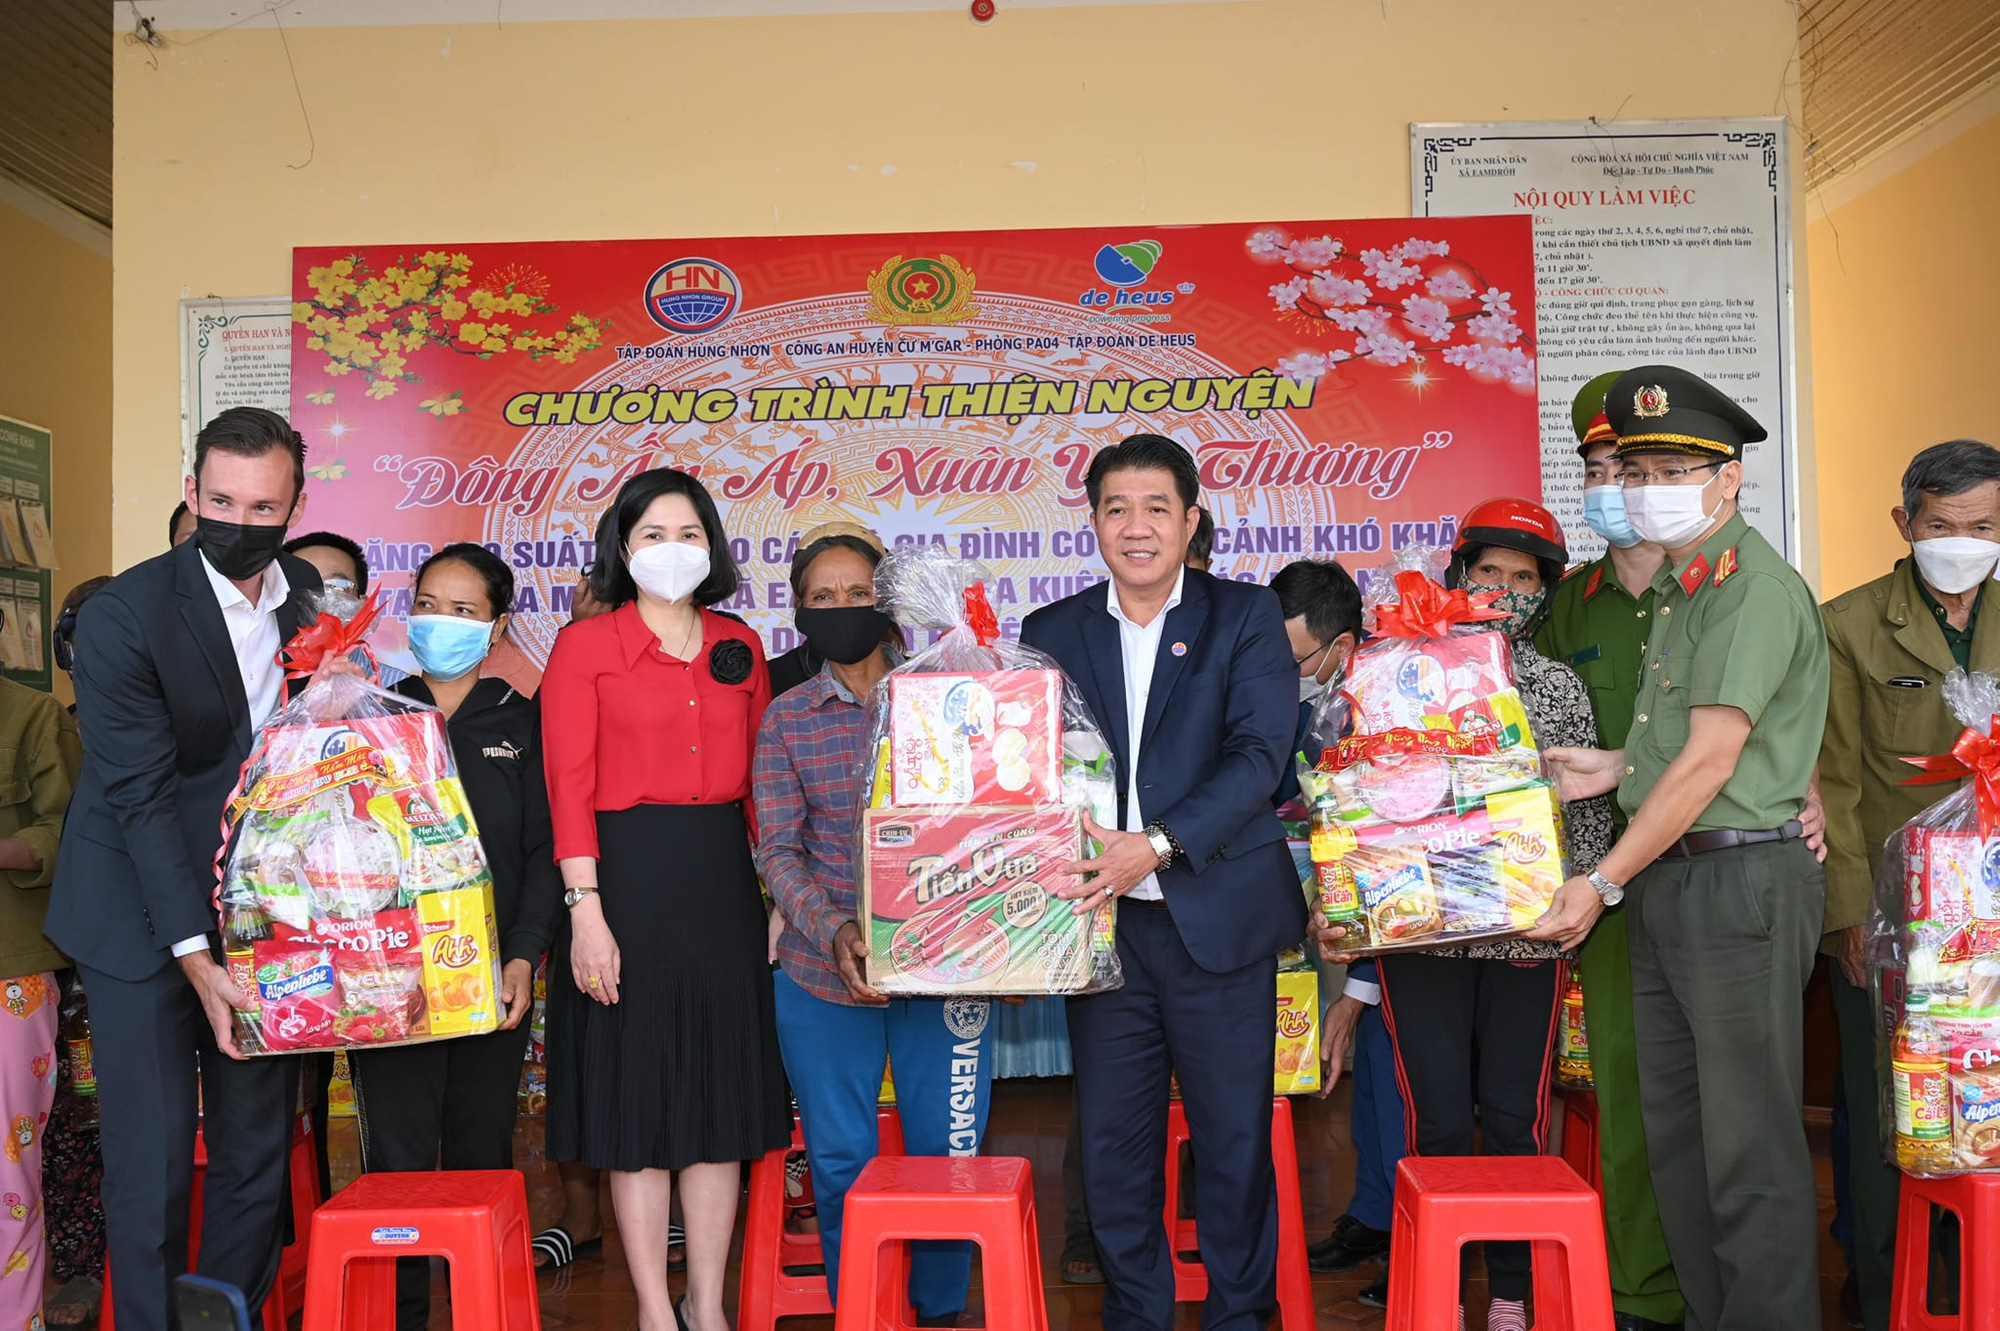 Tập đoàn Hùng Nhơn chia sẻ khó khăn, tặng quà tết cho hàng nghìn người nghèo các tỉnh Tây Nguyên - Ảnh 2.